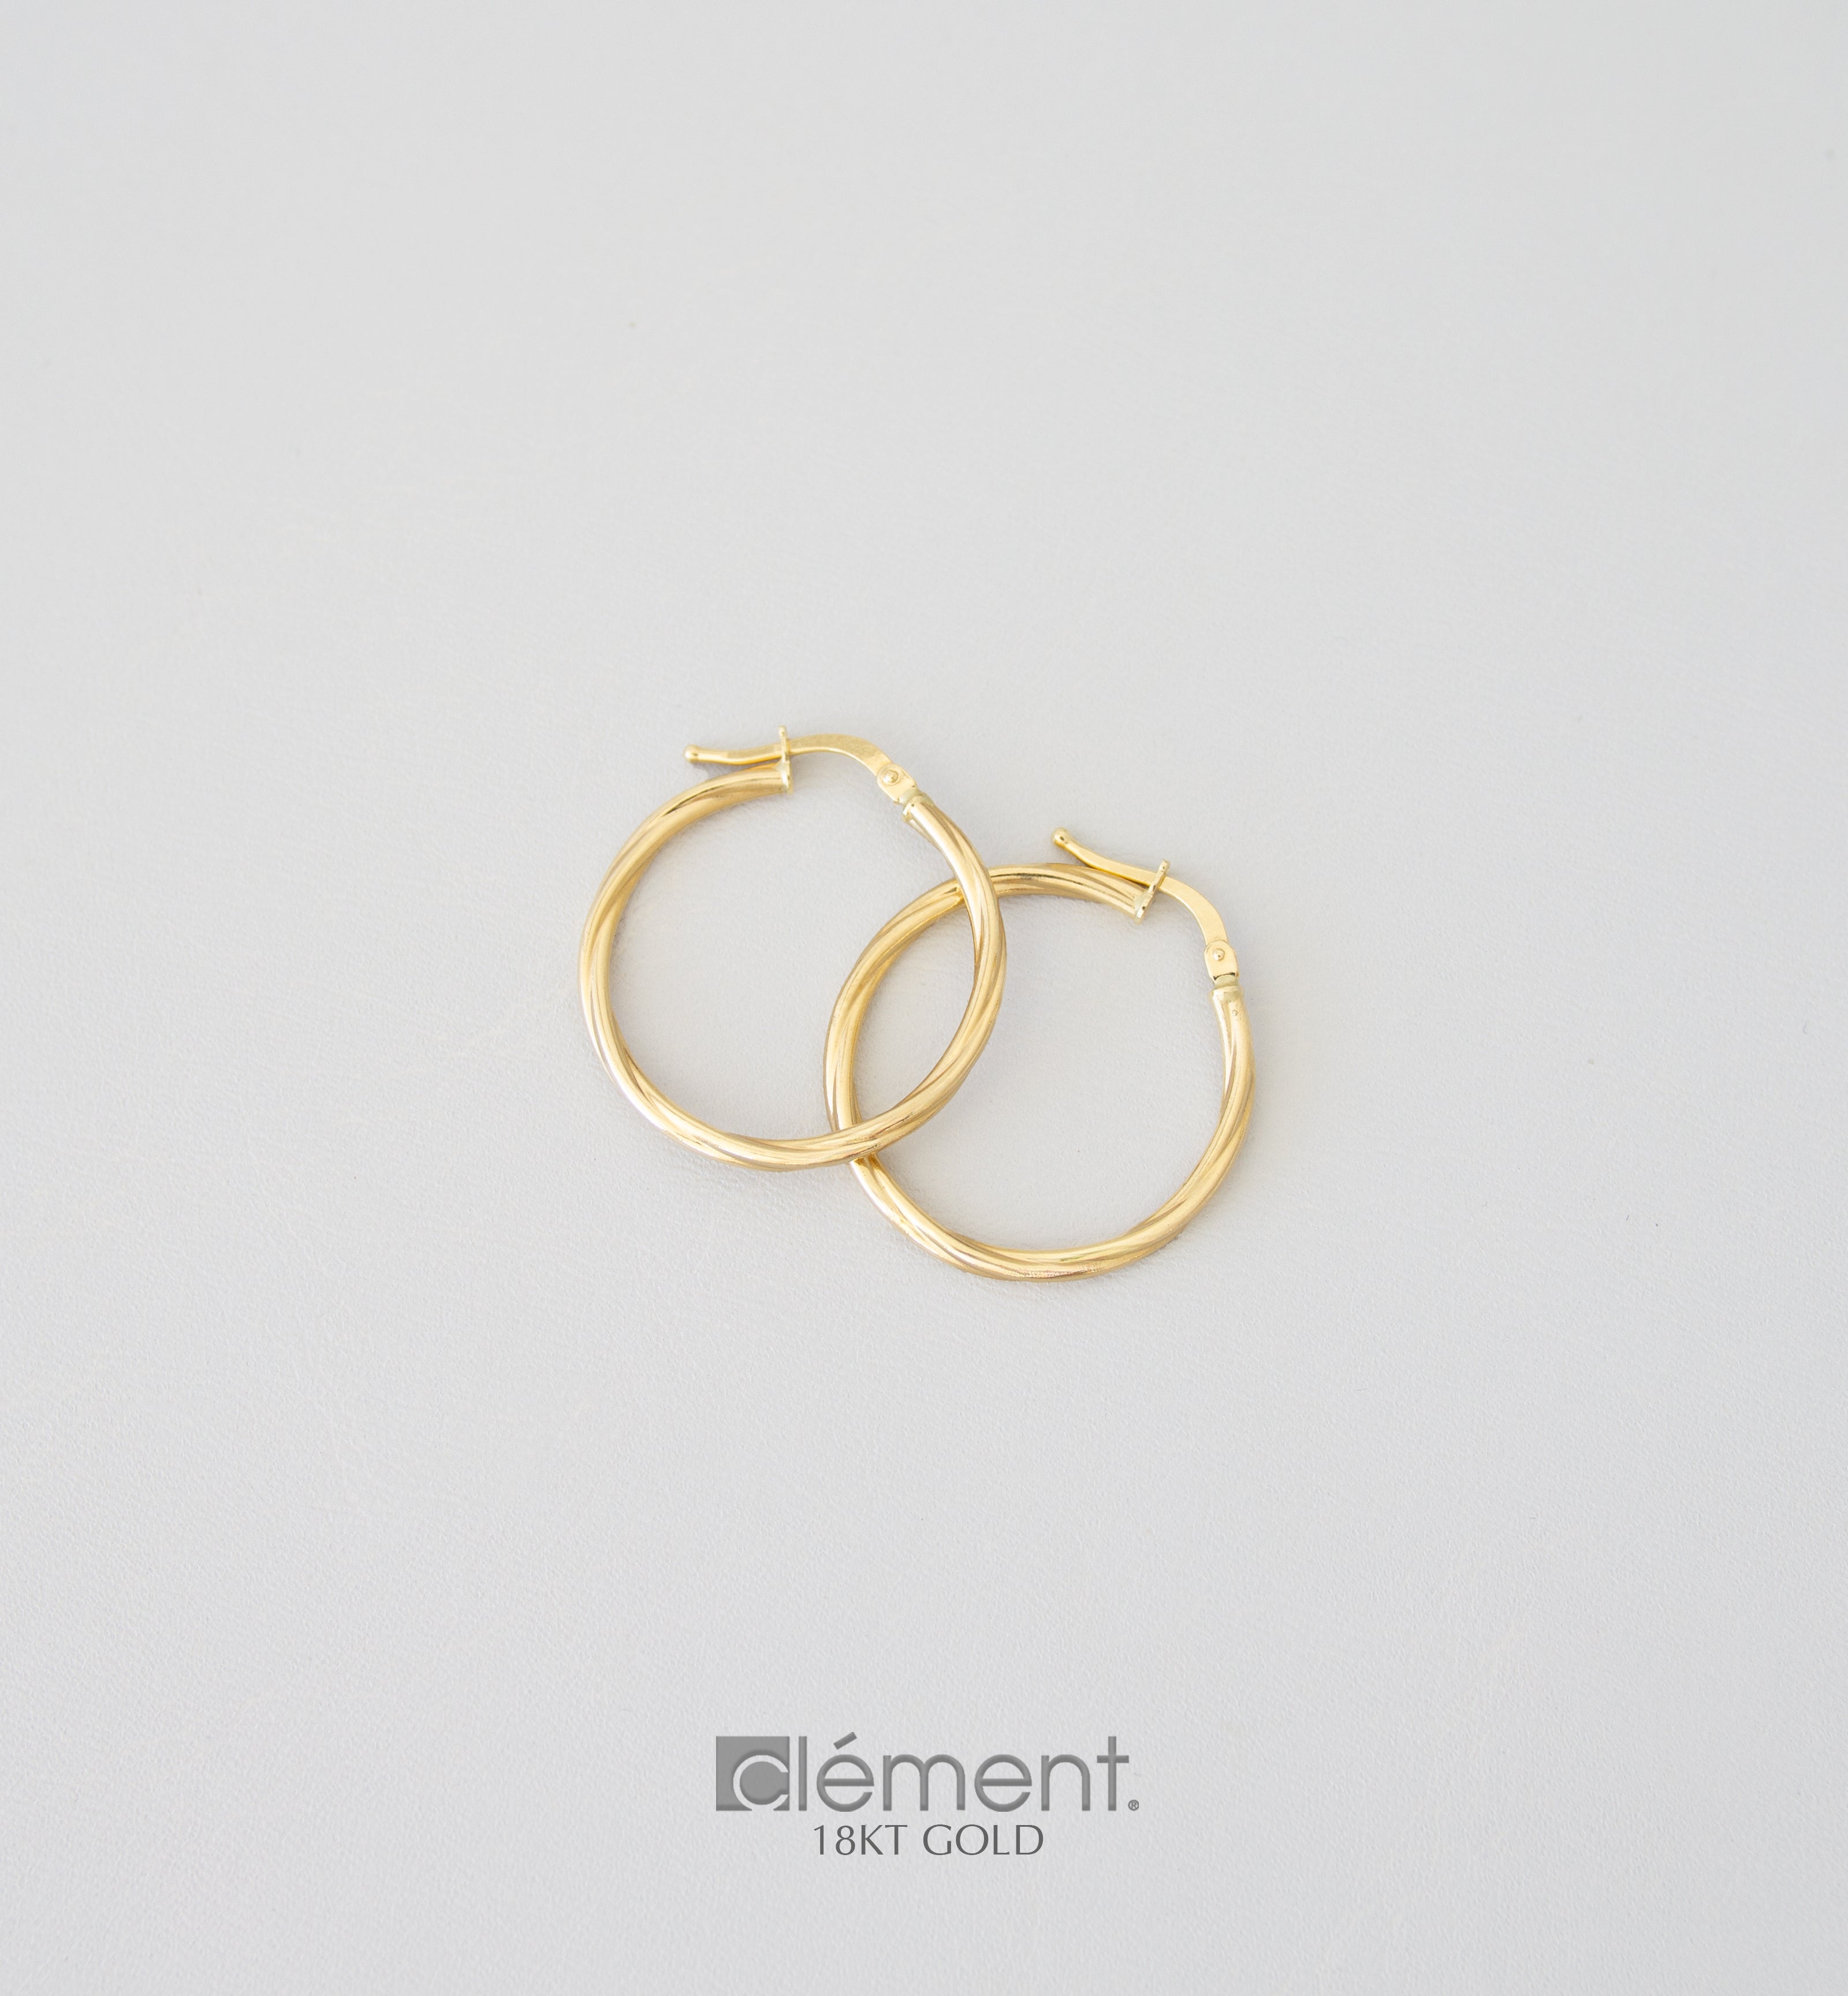 18ct Yellow Gold Hoop Earrings